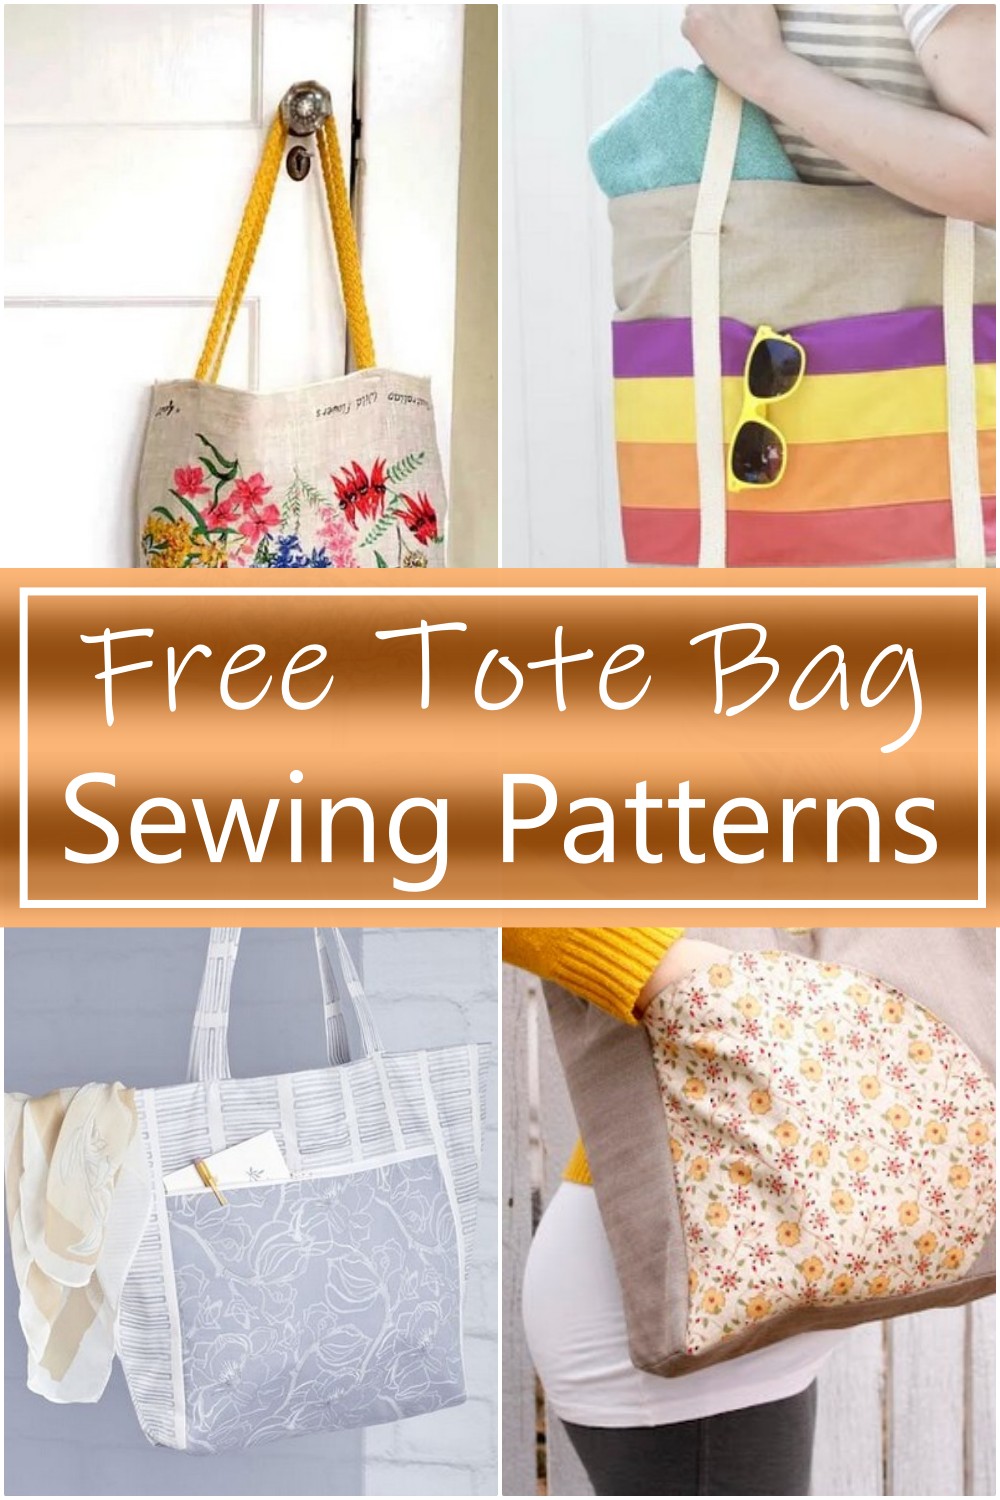 Free Tote Bag Sewing Patterns